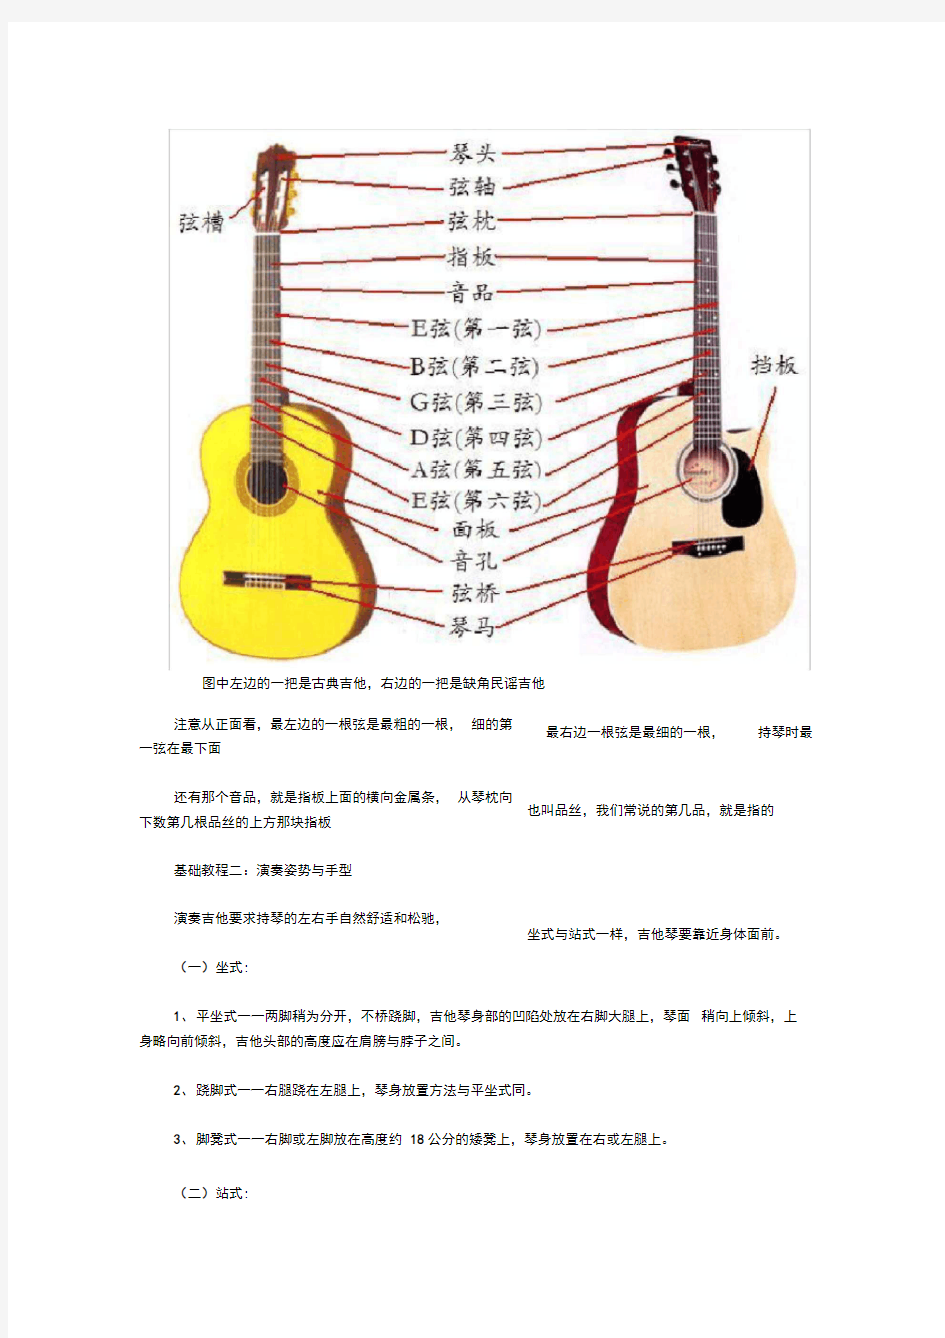 完整版免费吉他入门教材最实用最简单的教程